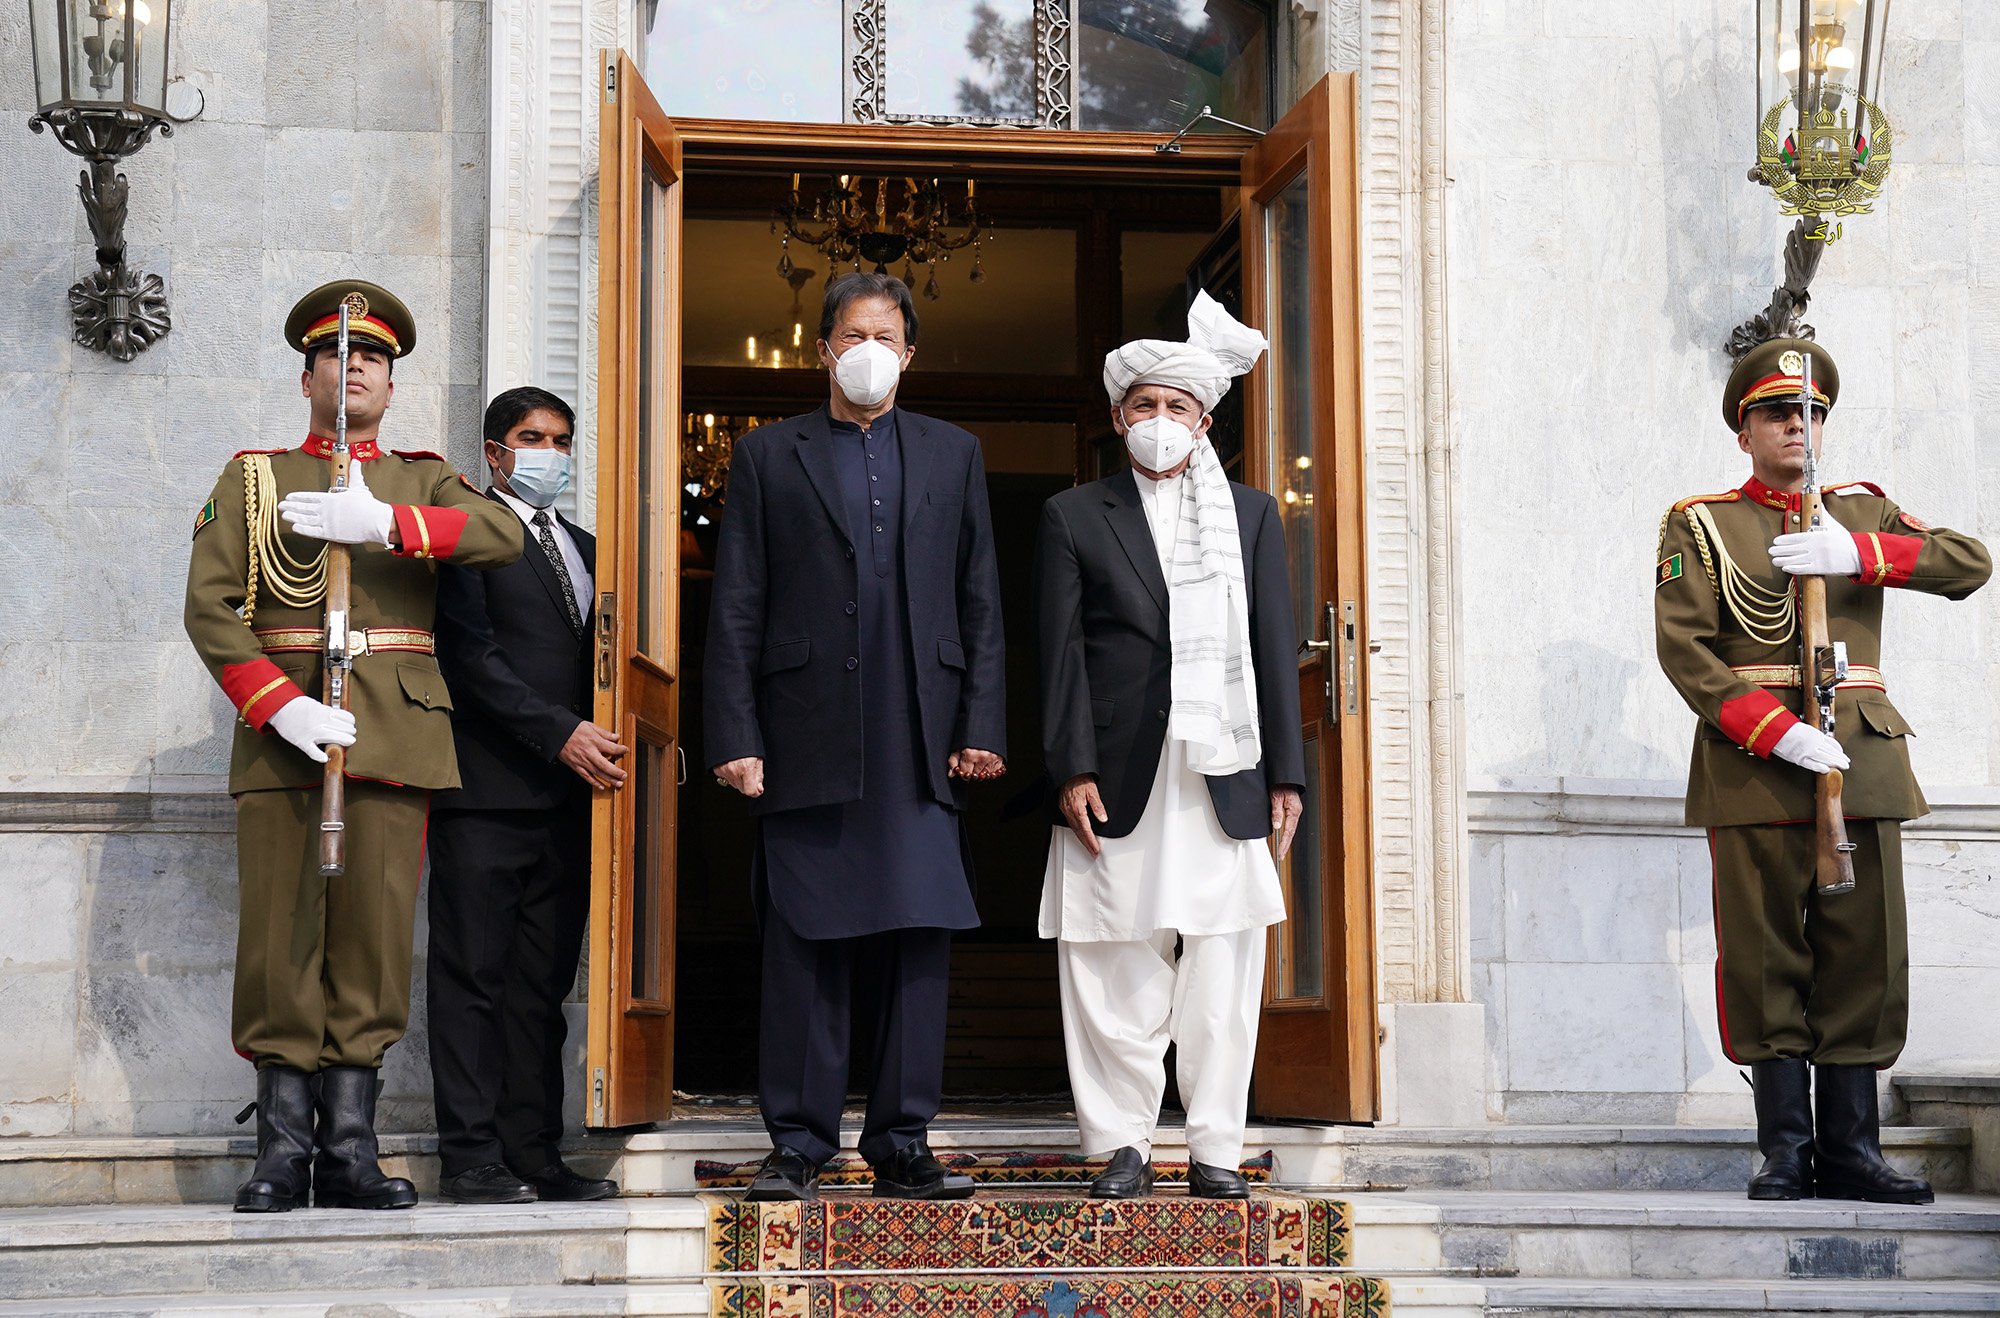 افغانستان و پاکستان بر سر ایجاد دیدگاه مشترک در حمایت از صلح و ثبات توافق کردند